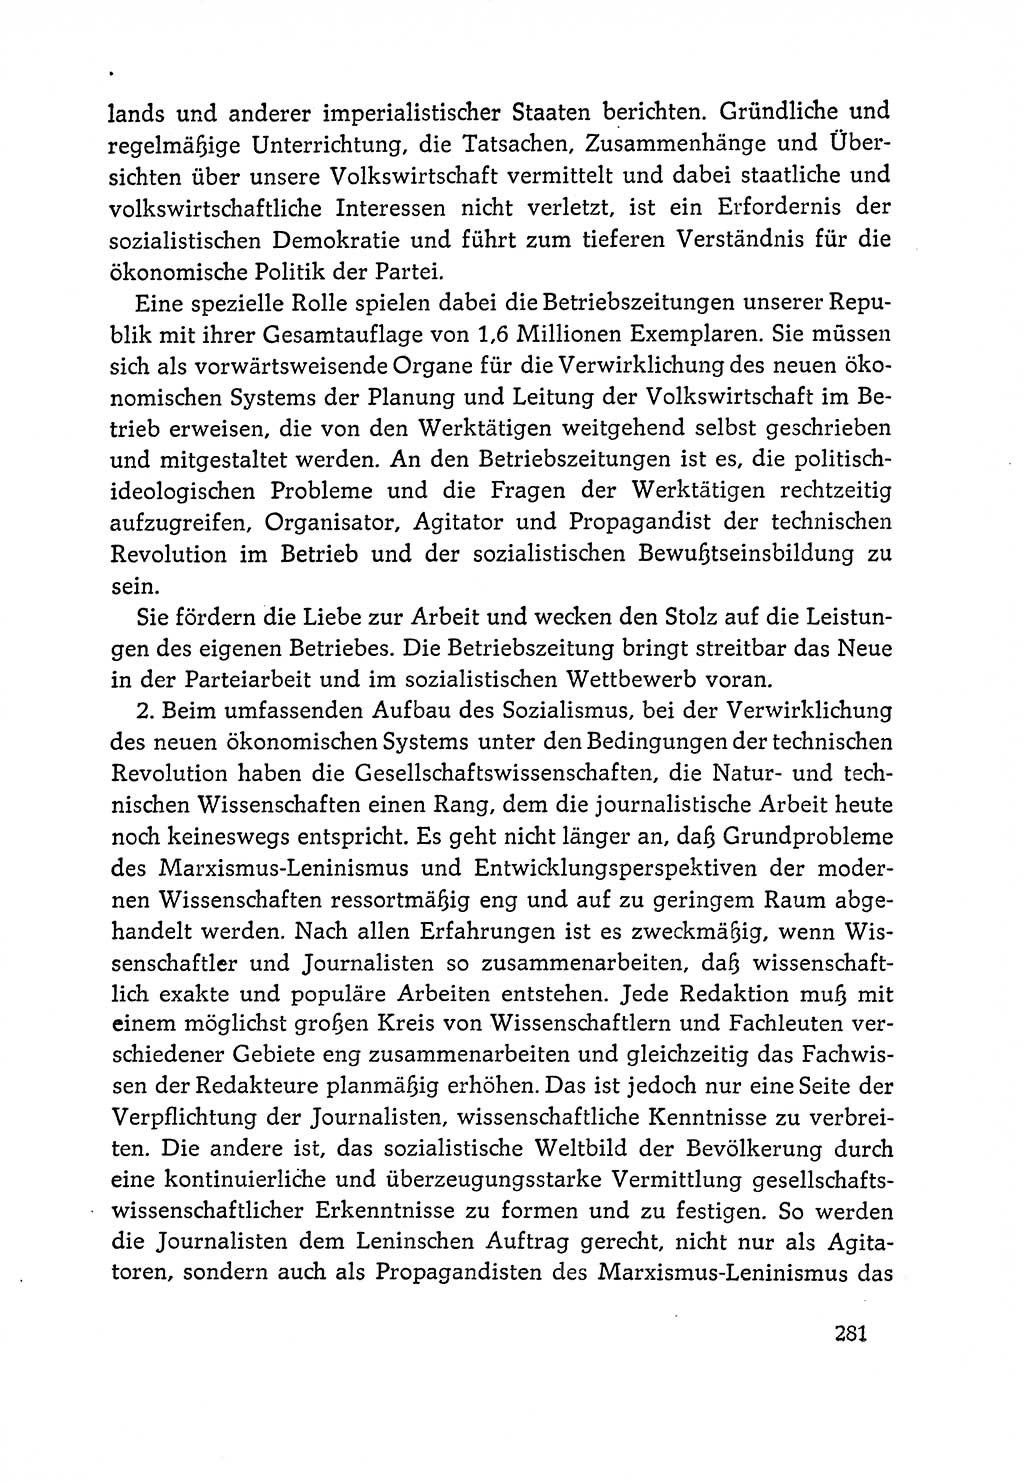 Dokumente der Sozialistischen Einheitspartei Deutschlands (SED) [Deutsche Demokratische Republik (DDR)] 1964-1965, Seite 281 (Dok. SED DDR 1964-1965, S. 281)